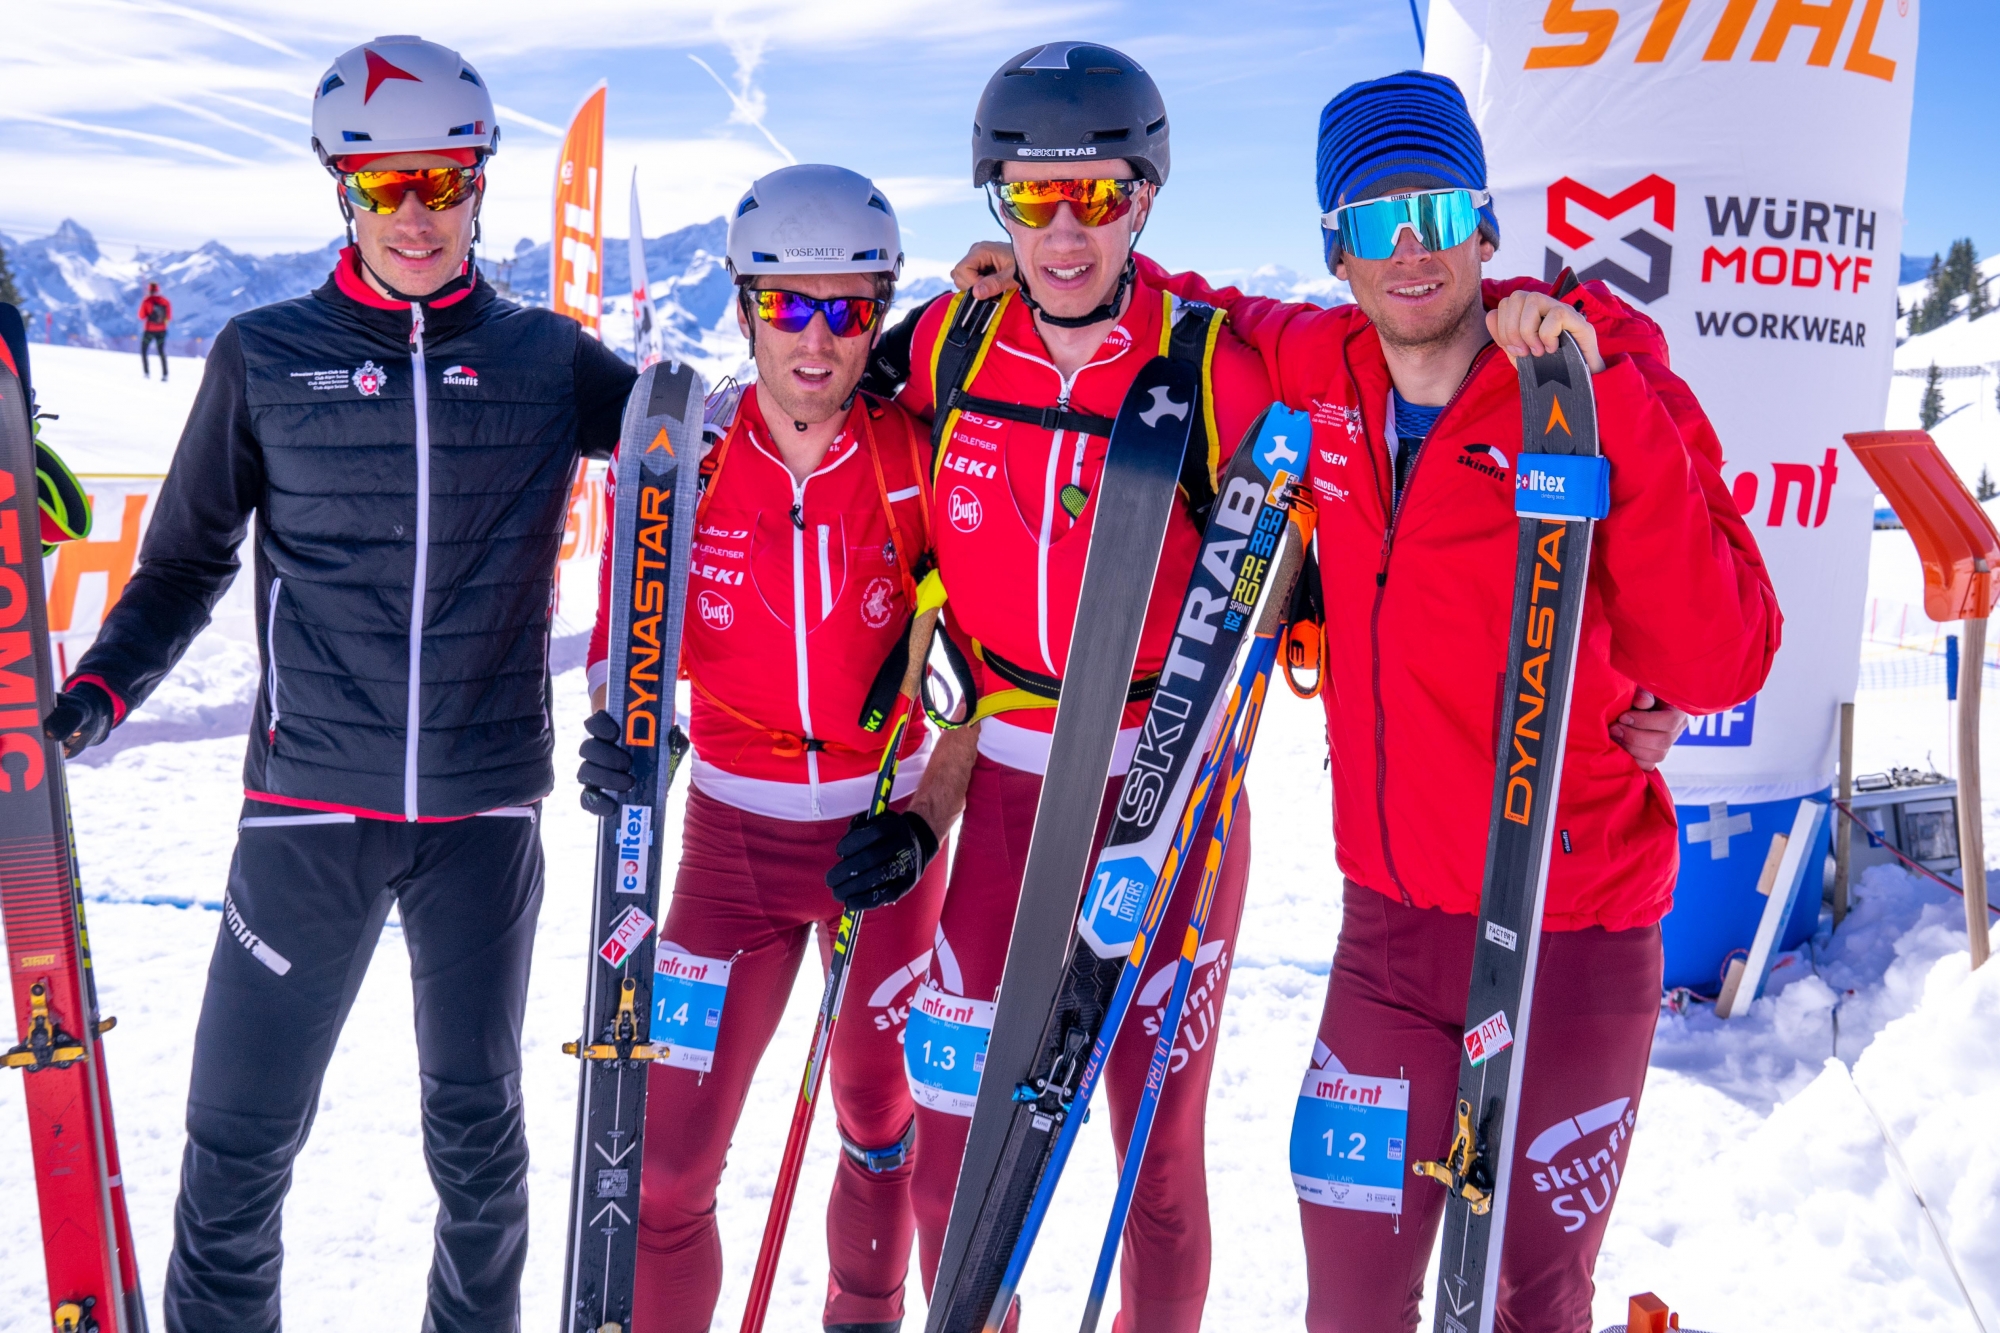 Le relais masculin suisse a terminé en chocolat pour la dernière épreuve des championnats du monde. La Suisse termine malgré tout en tête du classement des médailles par nation.